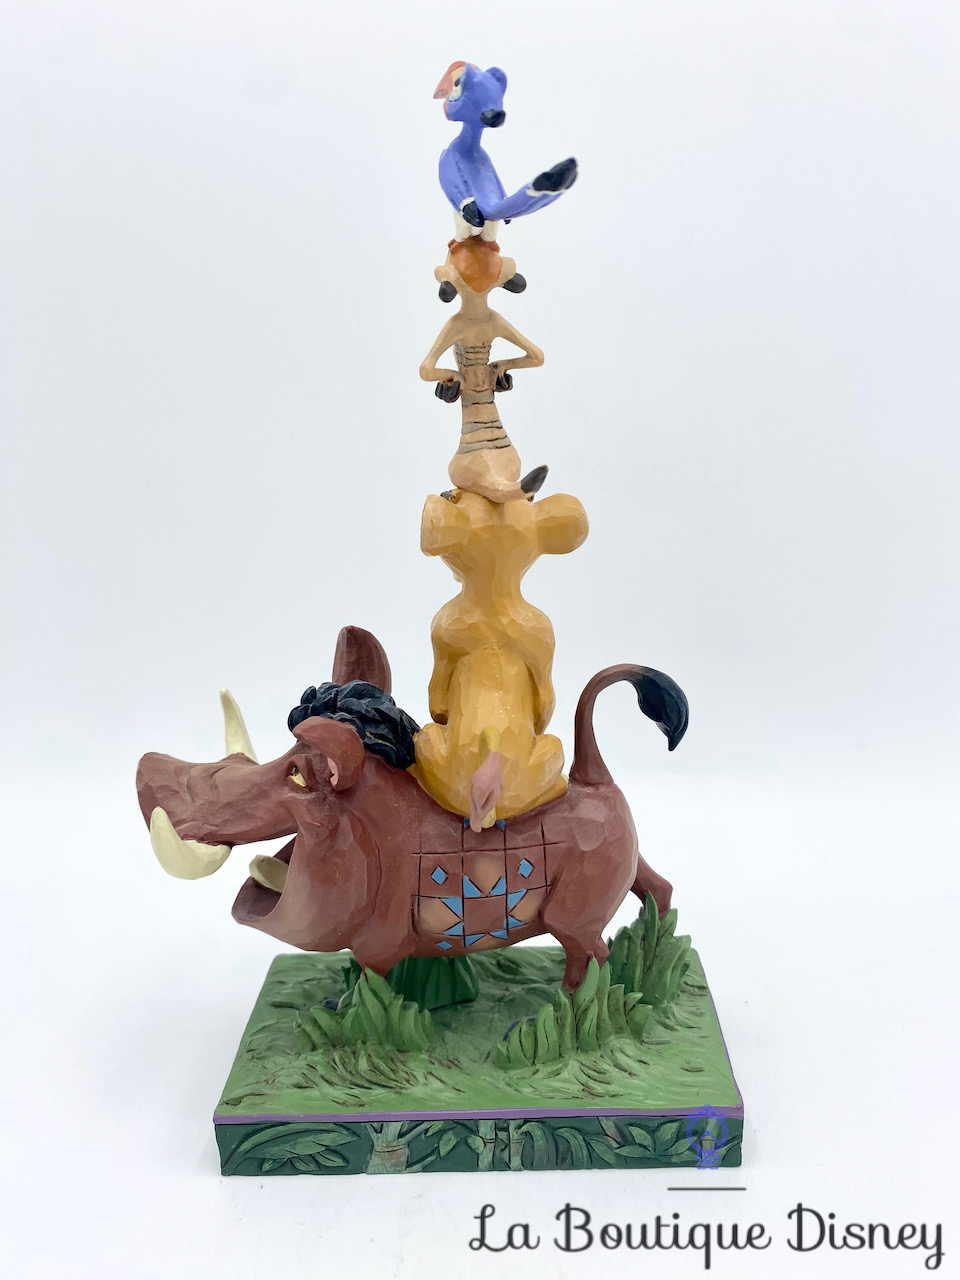 Figurine-Showcase-Fathers-Pride-Le-roi-lion-Disney-Tradition-Collection-Jim-Shore-6000972-Simba-Mufasa